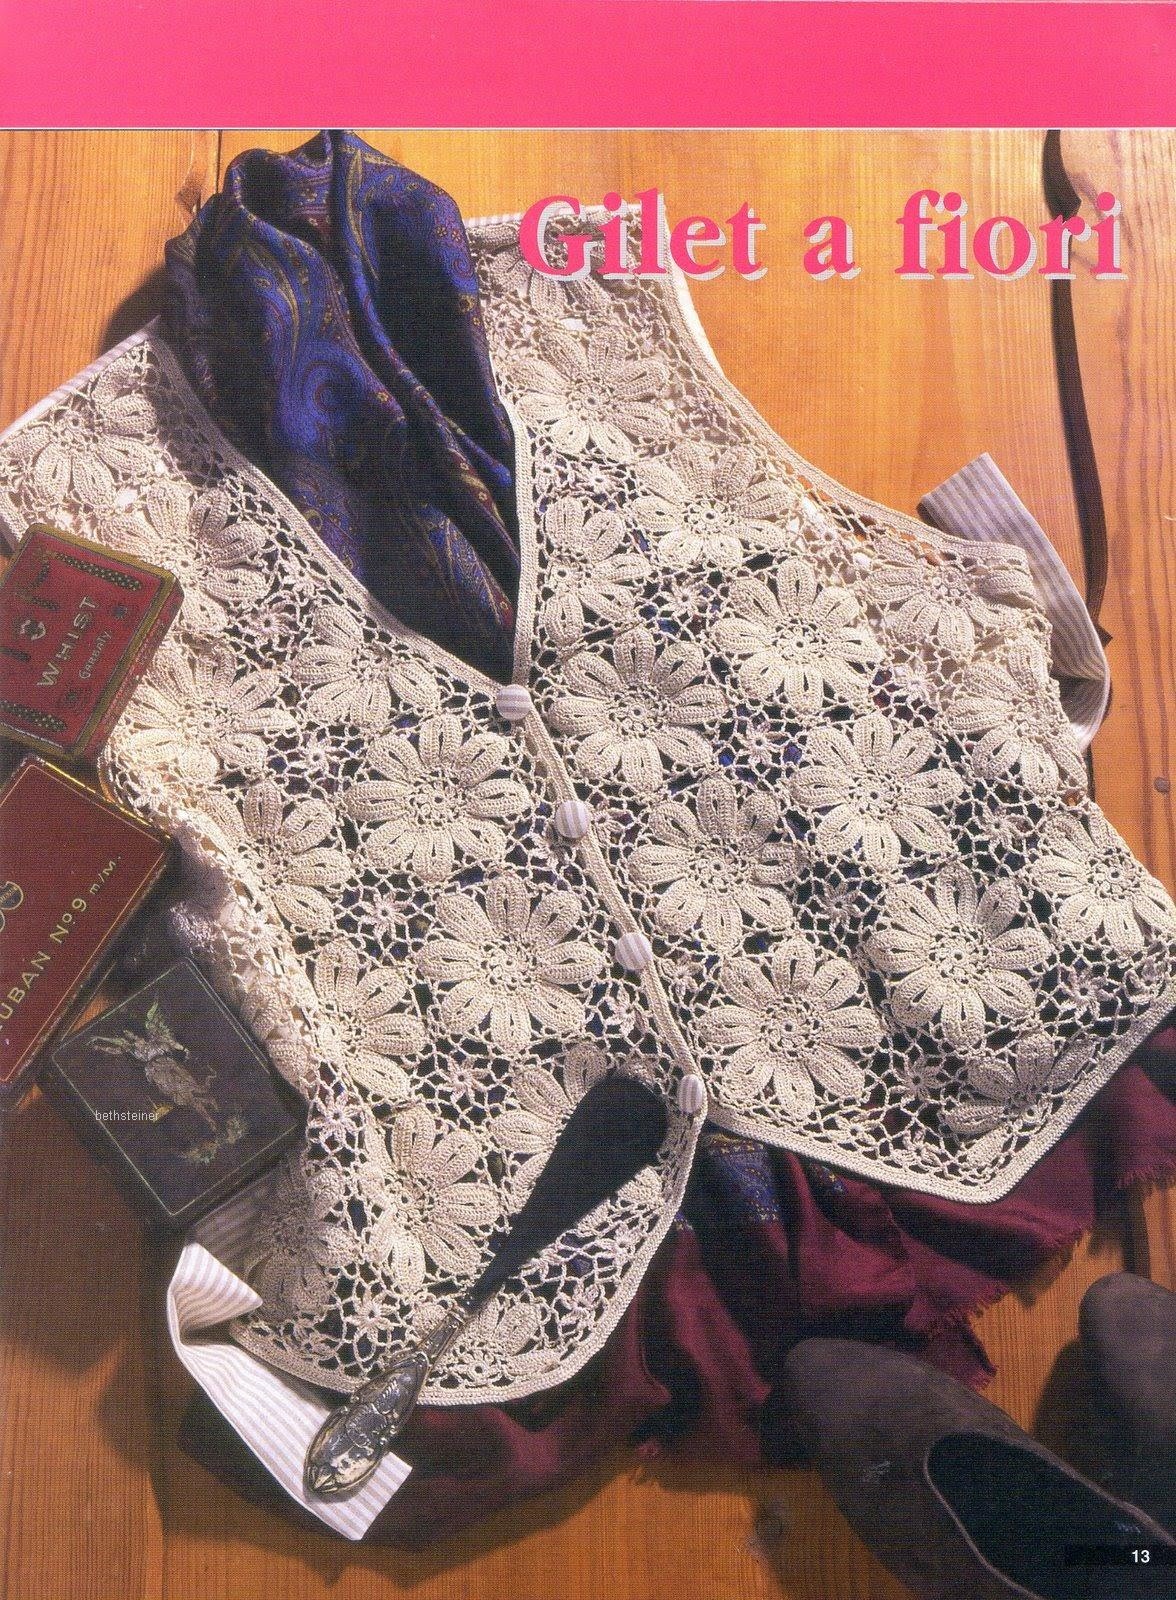 Crochet shrug| how to crochet vest shrug free pattern tutorial for beginners 36